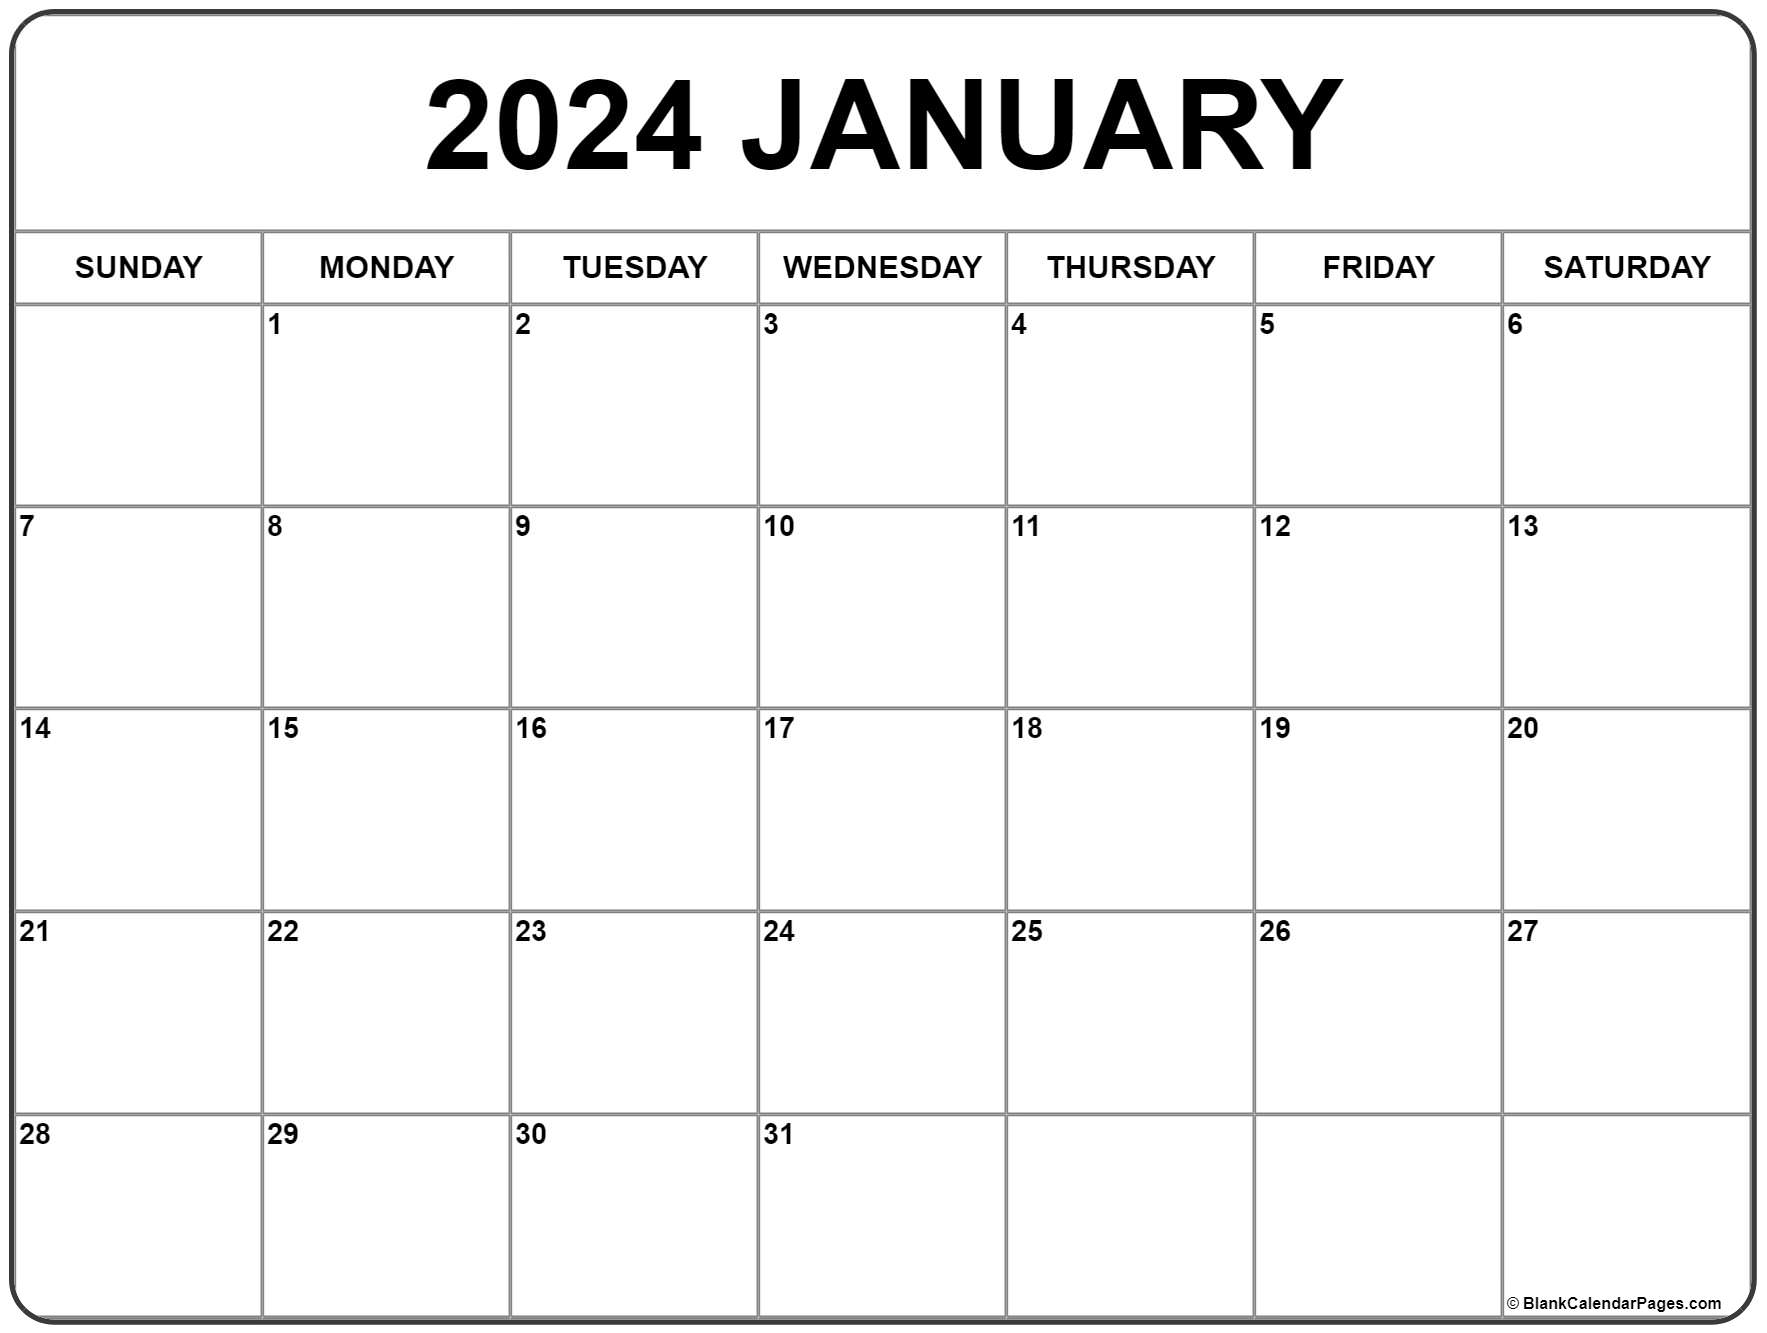 Printable And Editable Calendar 2022 January 2022 Calendar | Free Printable Calendar Templates